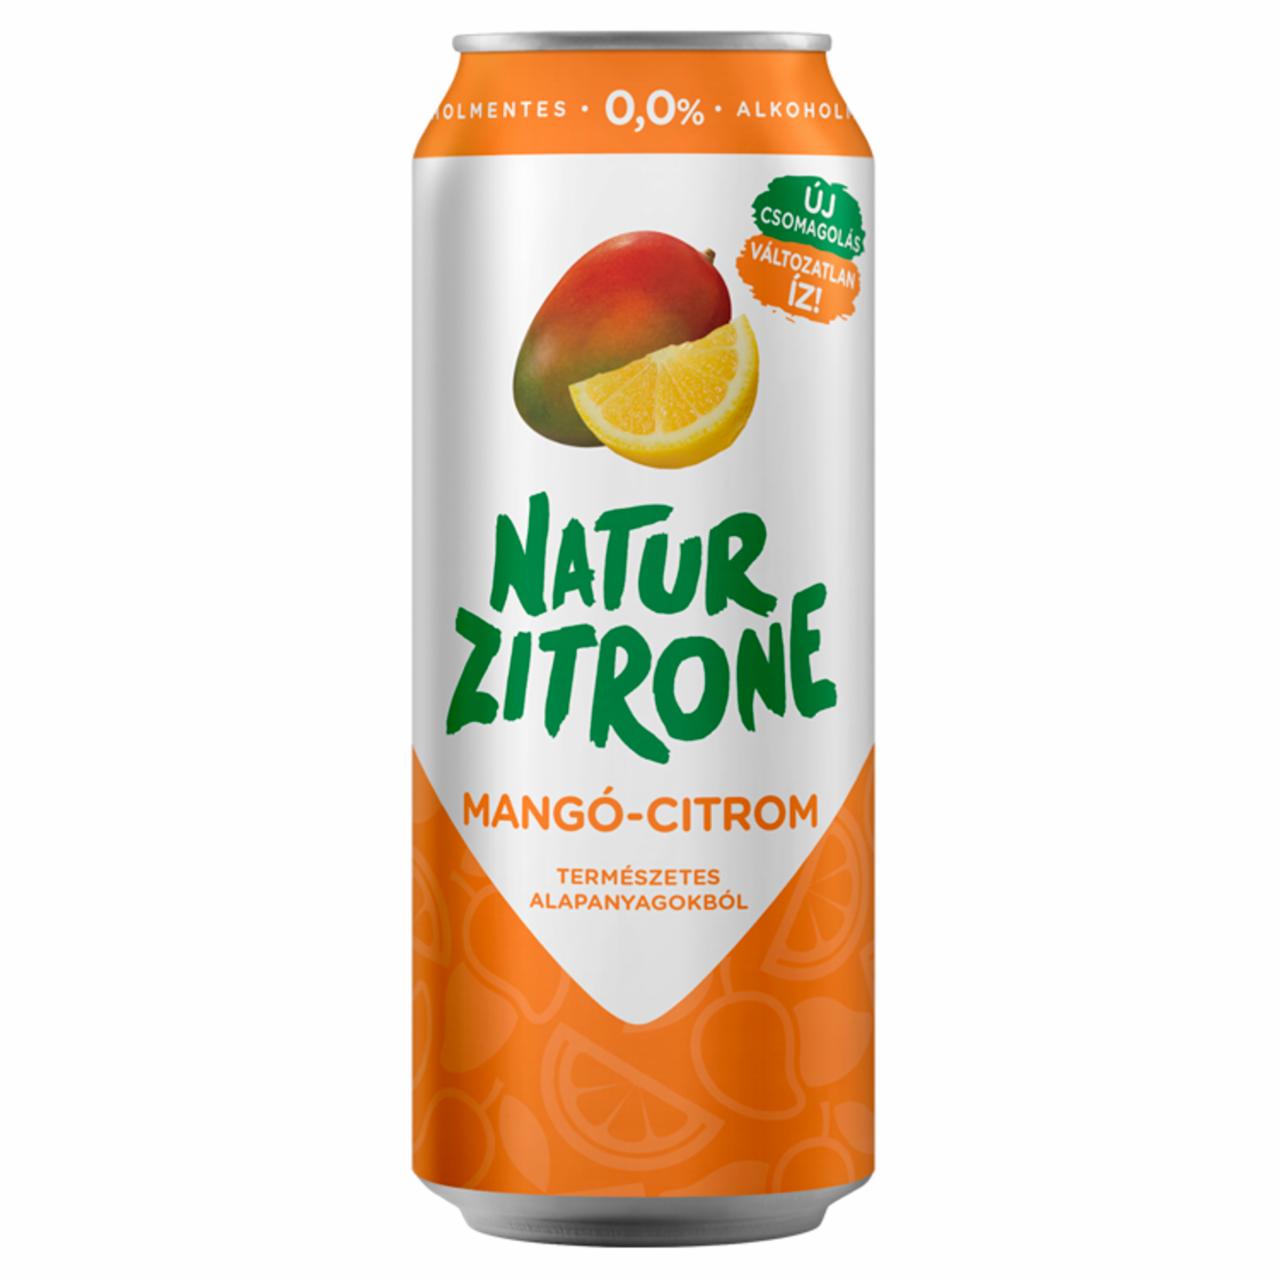 Képek - Gösser Natur Zitrone mangó-citrom ízű alkoholmentes sörital 0,0% 0,5 l doboz